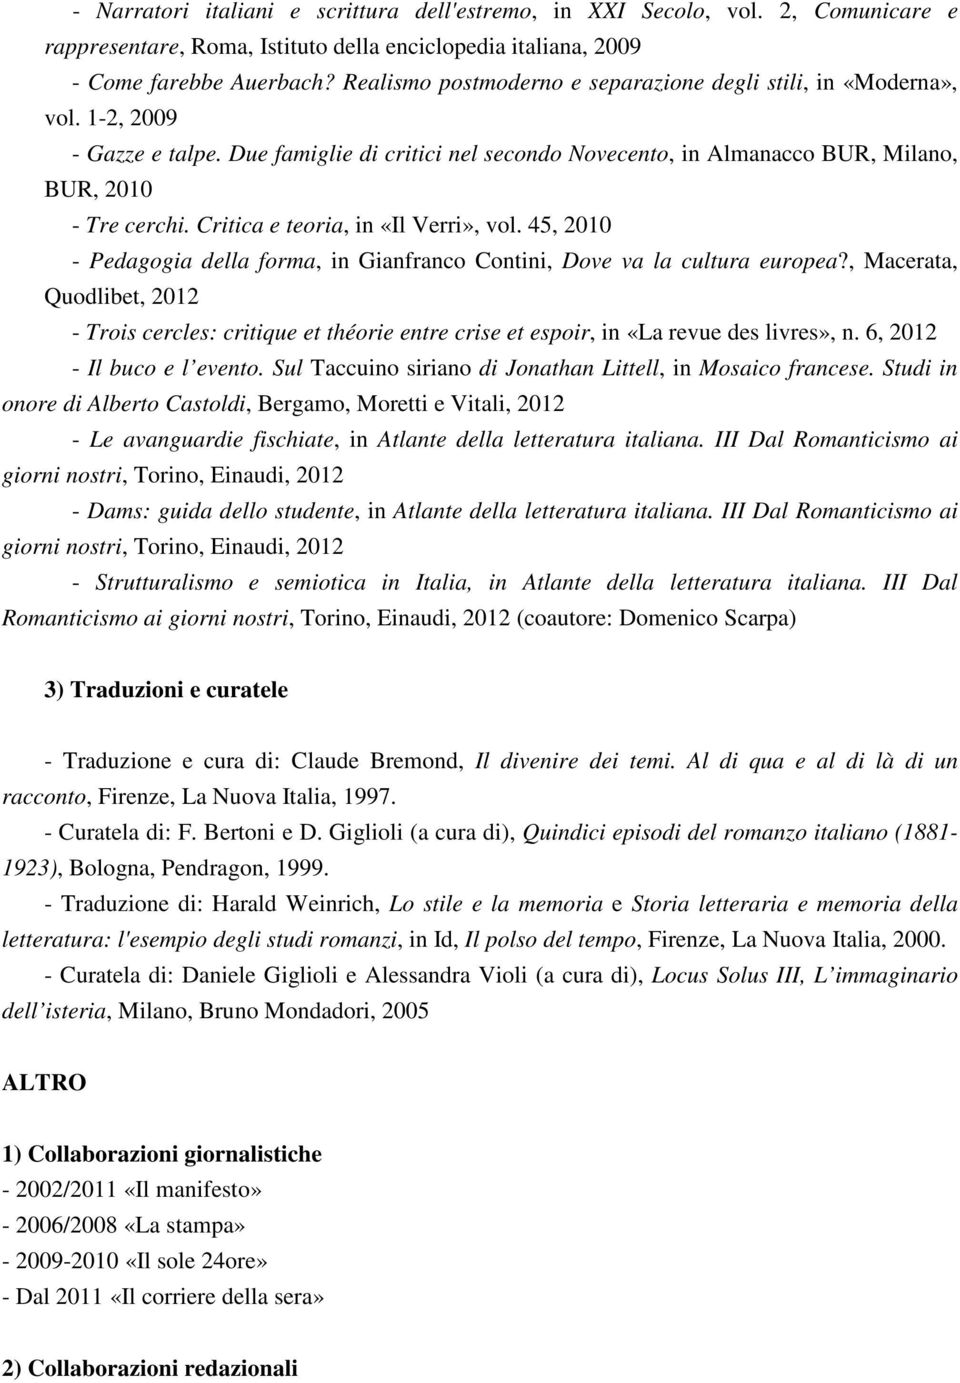 Critica e teoria, in «Il Verri», vol. 45, 2010 - Pedagogia della forma, in Gianfranco Contini, Dove va la cultura europea?